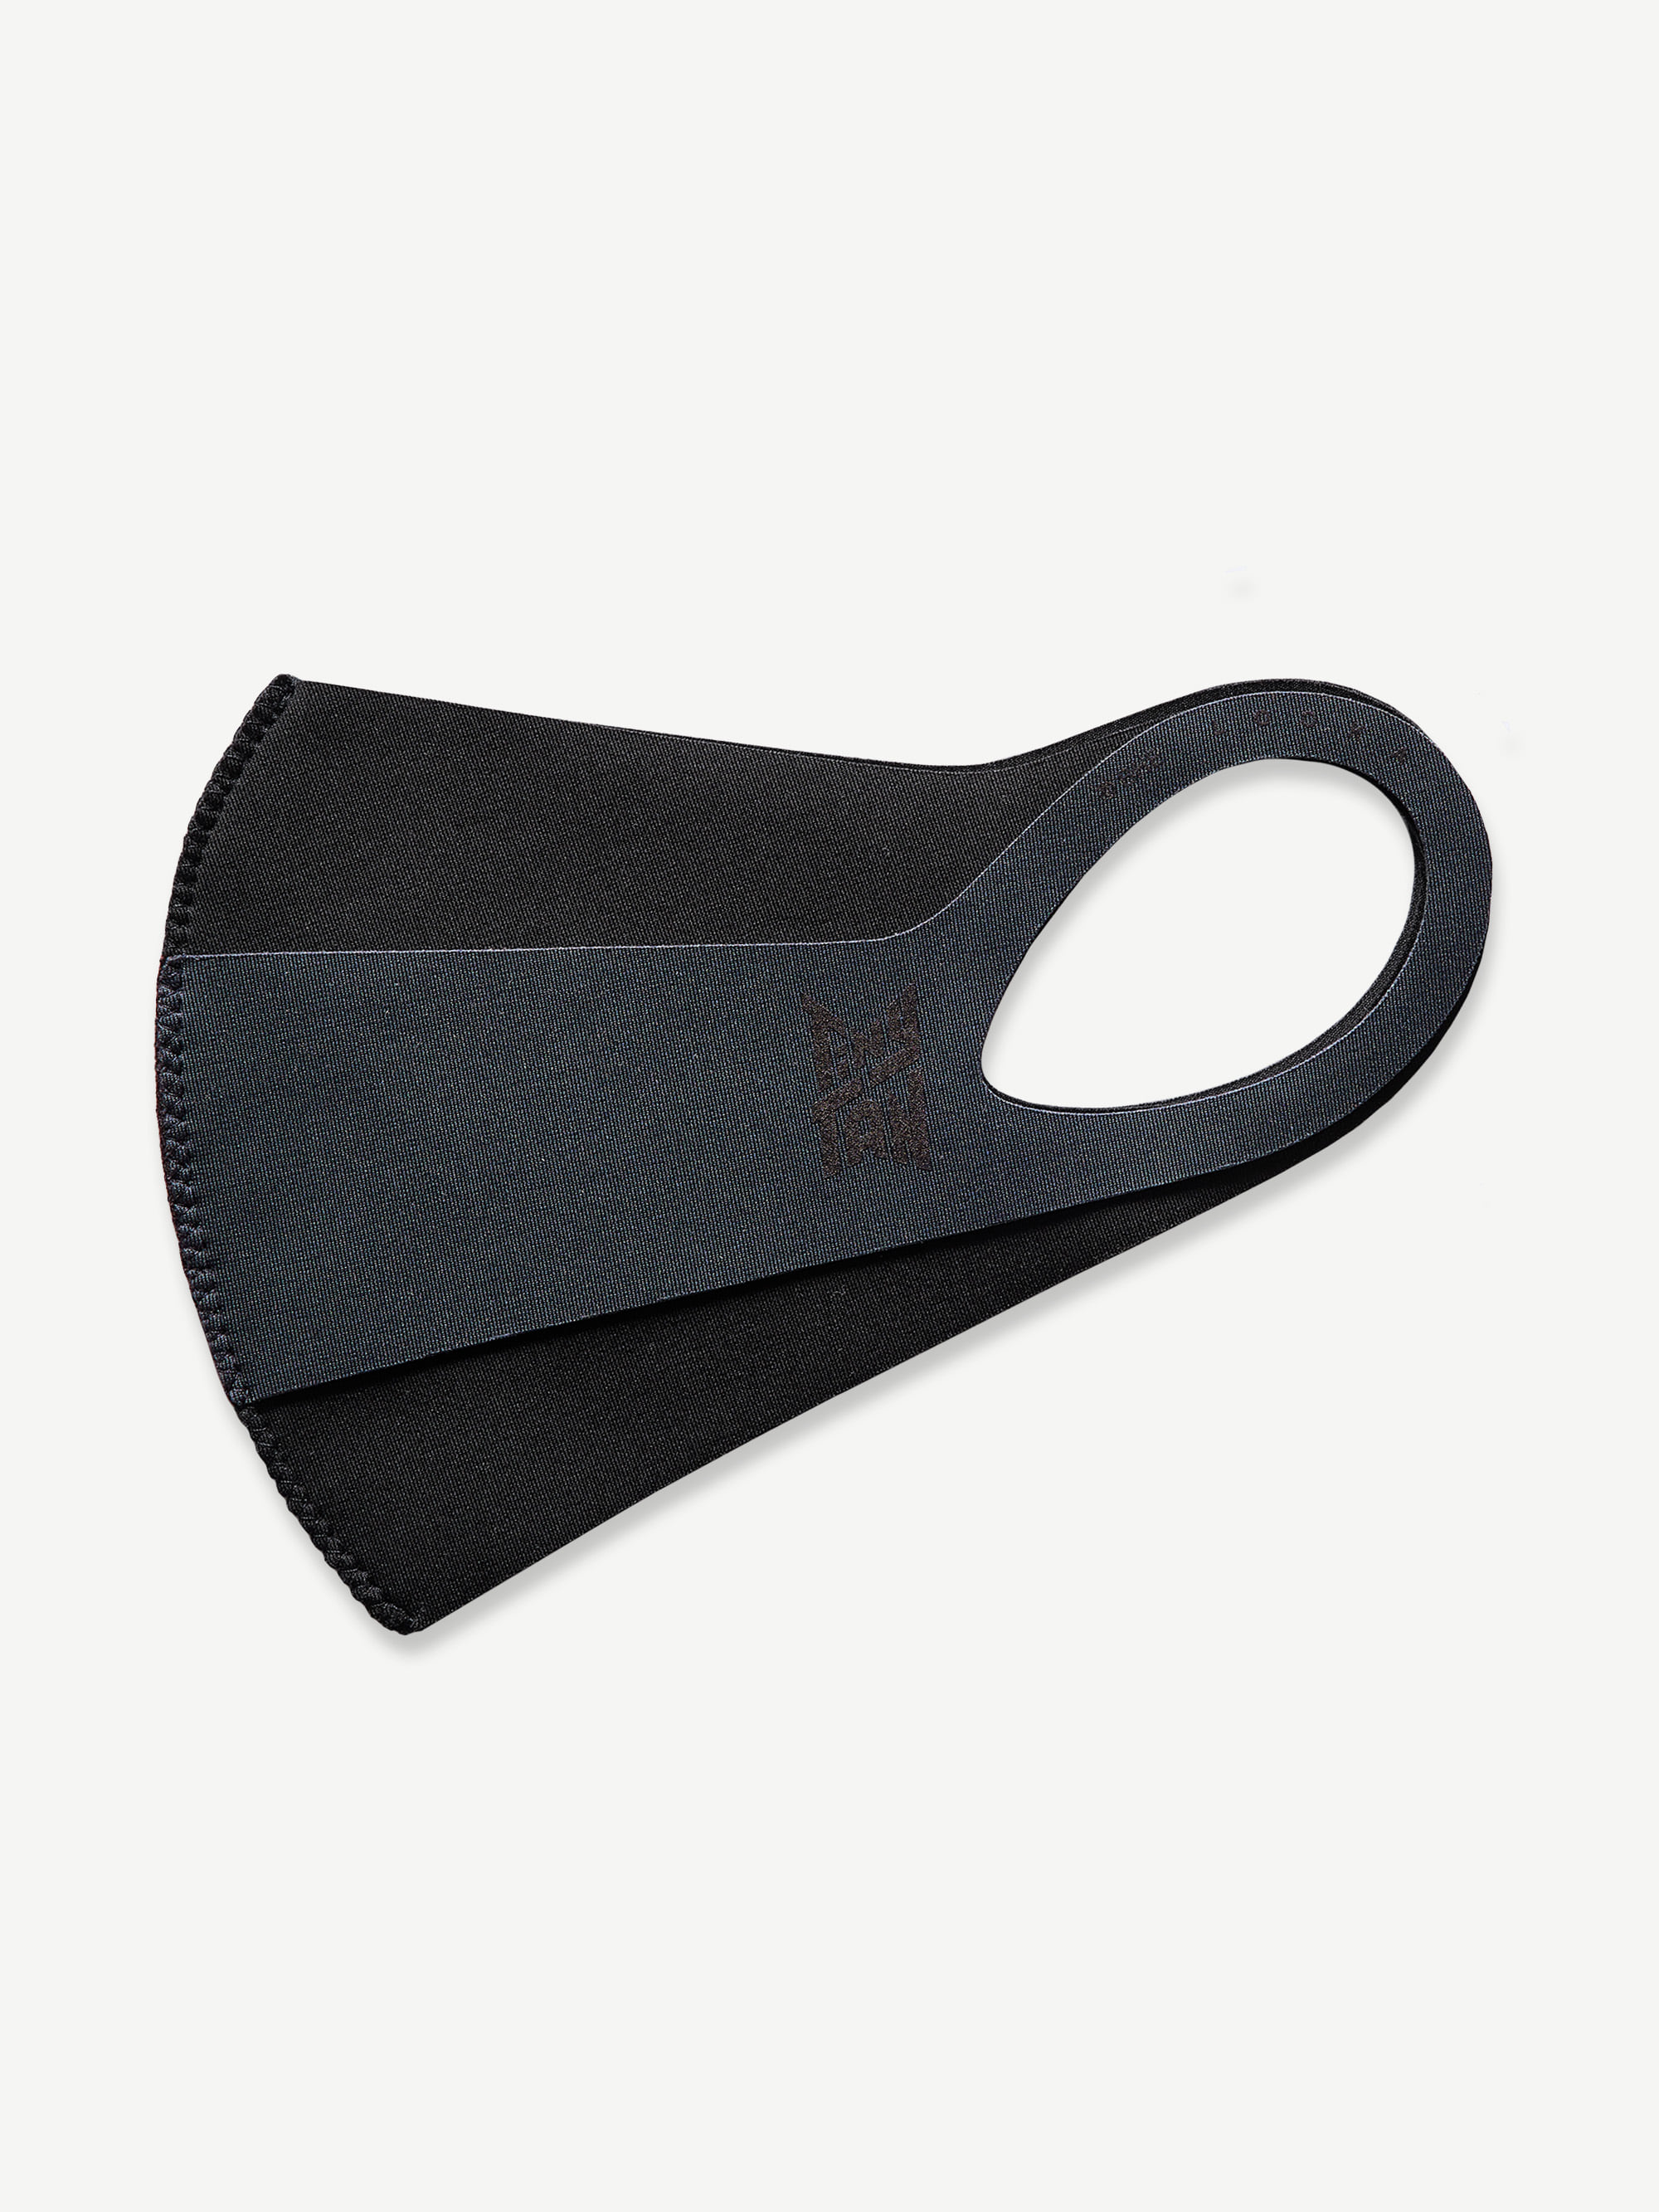 MIC Drop 2-Layer Black Fashion Mask